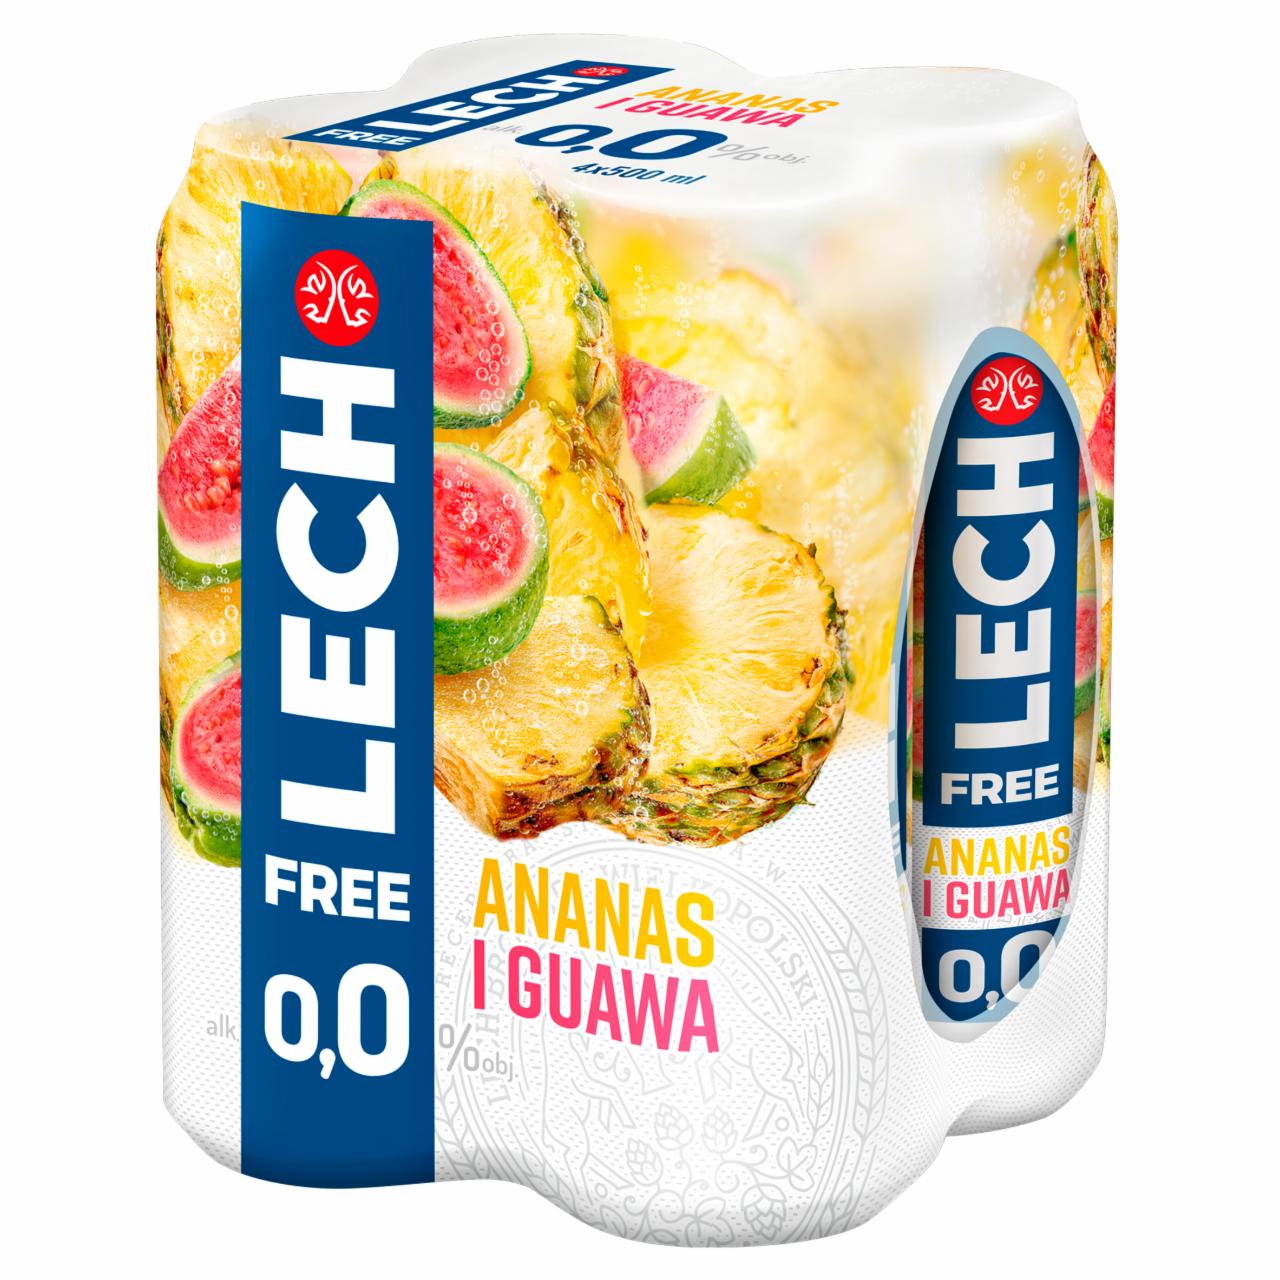 Zdjęcia - Lech Free Piwo bezalkoholowe ananas i guawa 4 x 500 ml